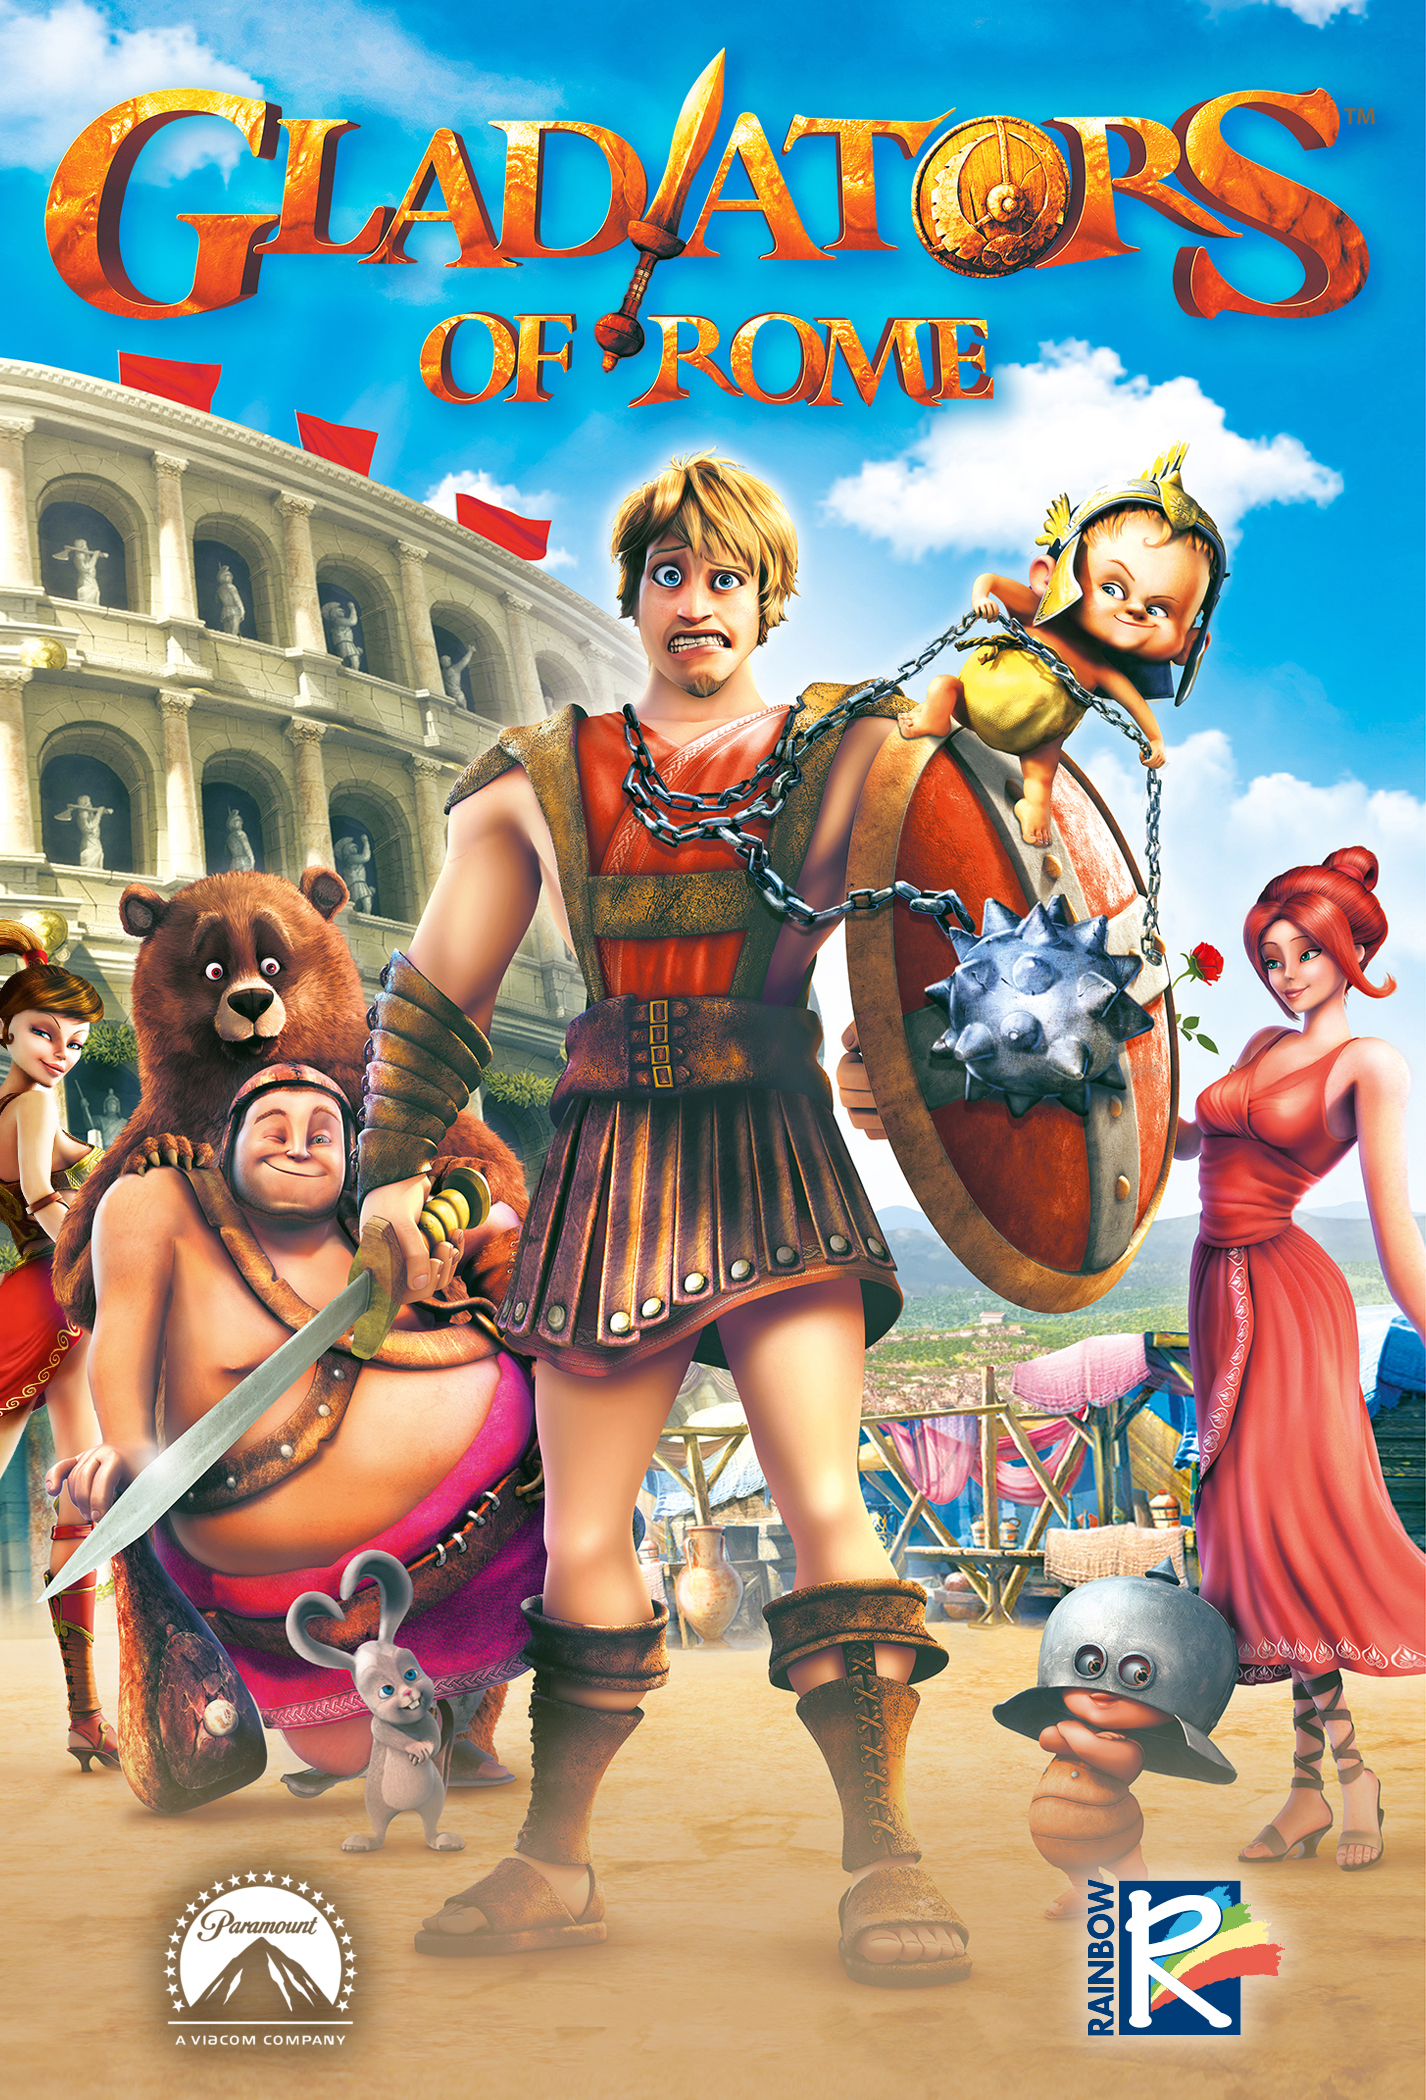 Gladiatori di Roma